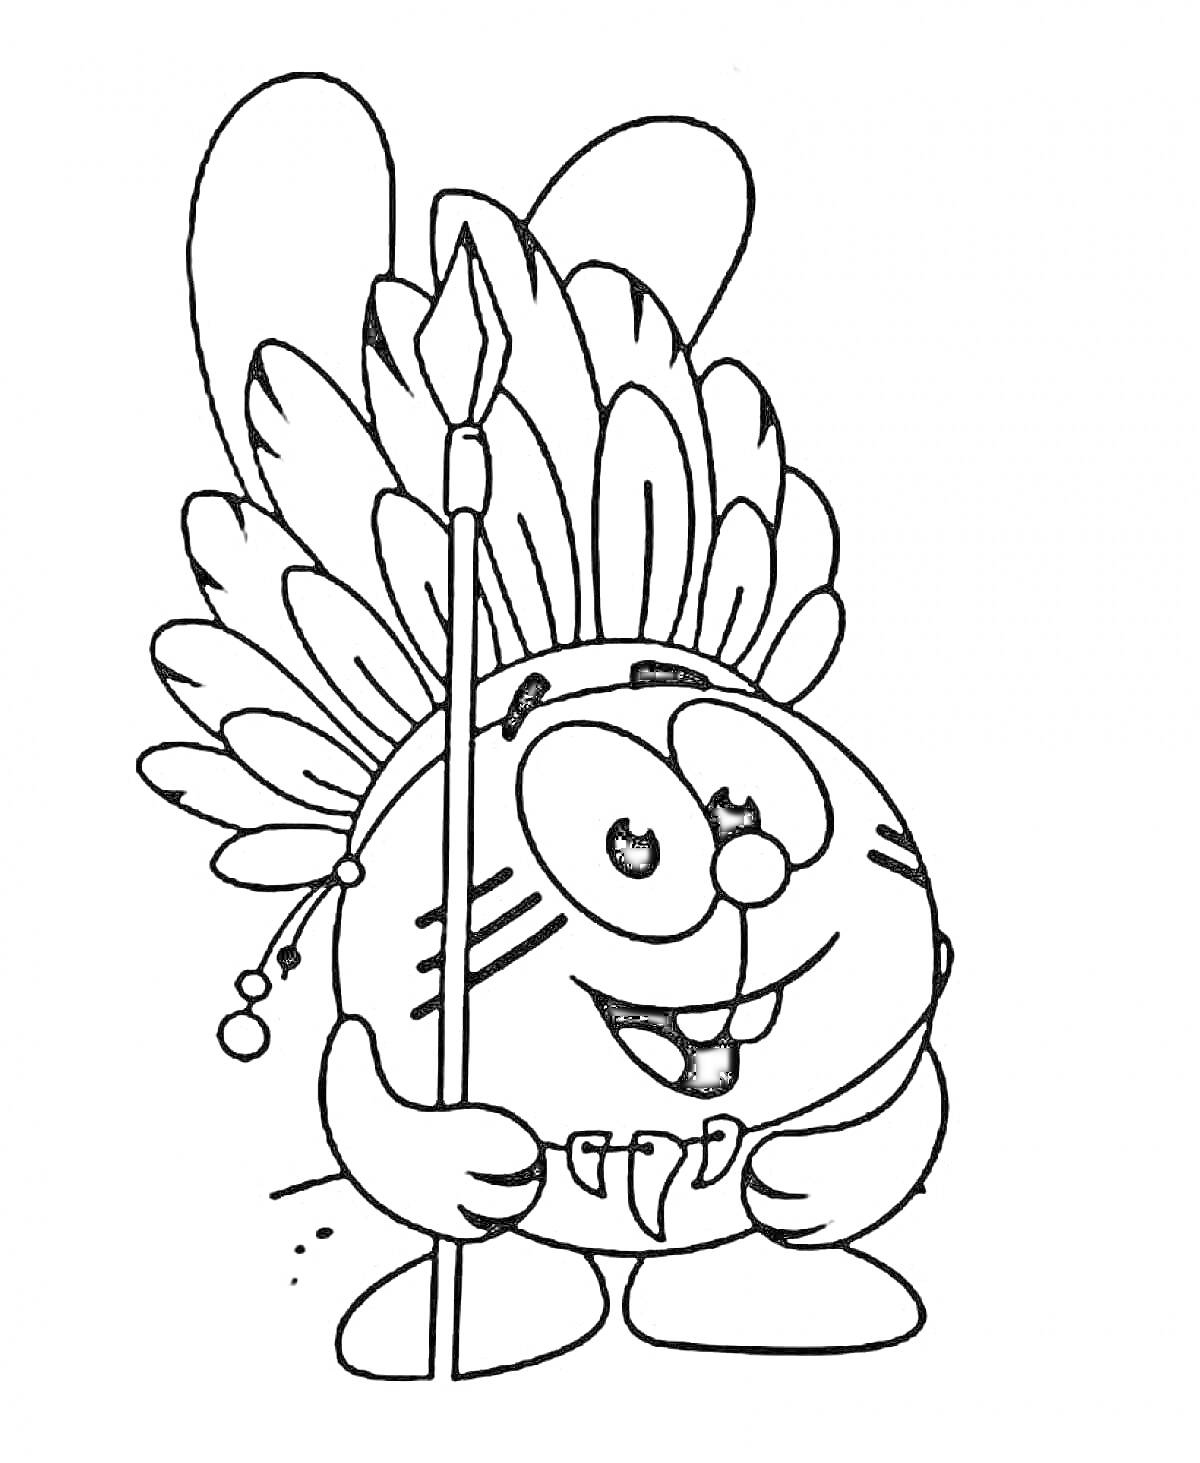 Раскраска Крош в головном уборе из перьев и с копьем